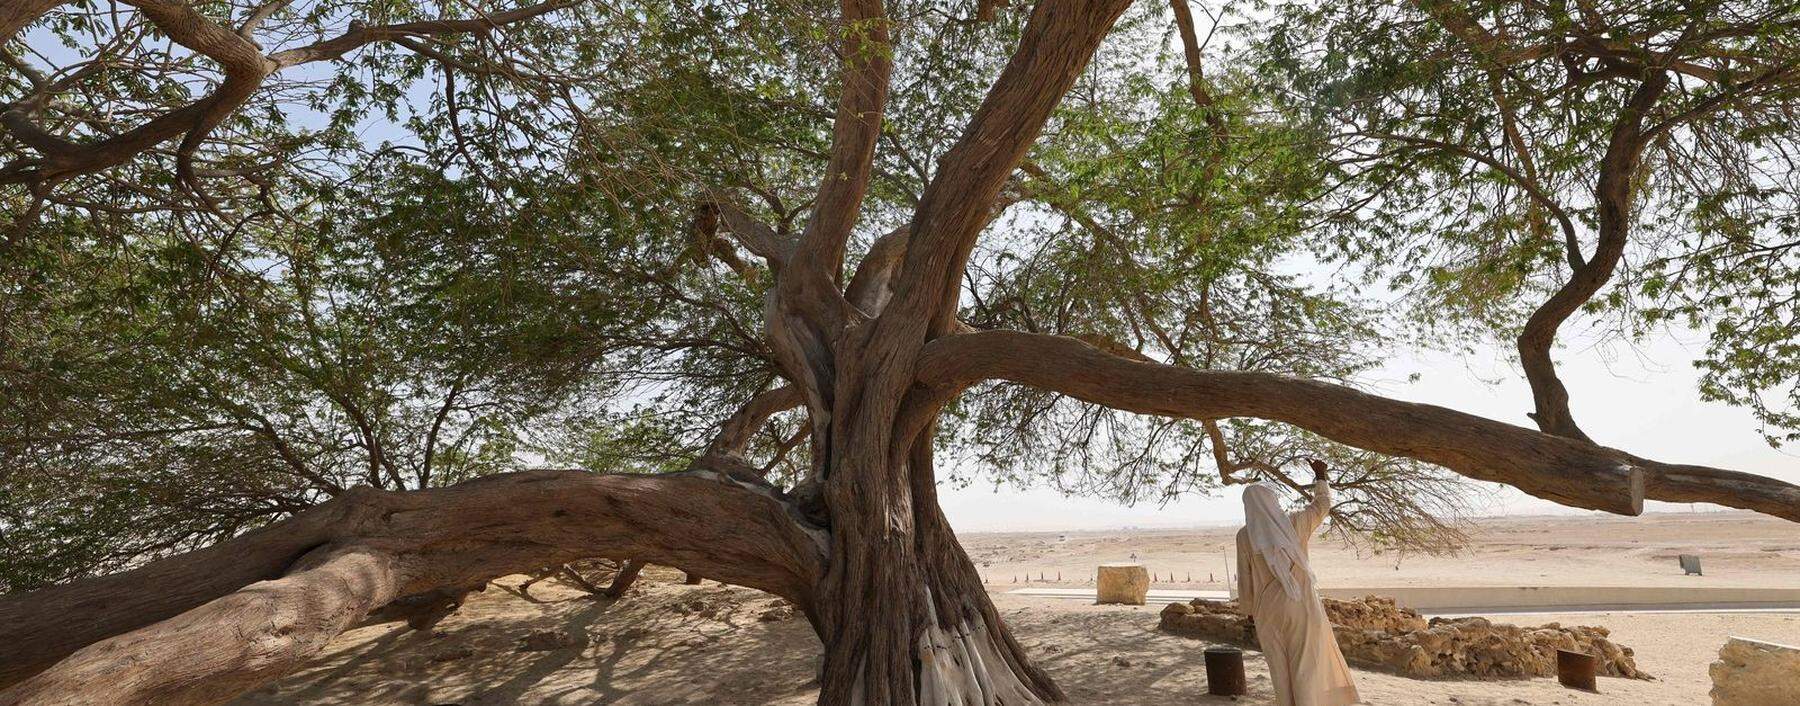 400 Jahre alt: der Baum des Lebens in Bahrain.